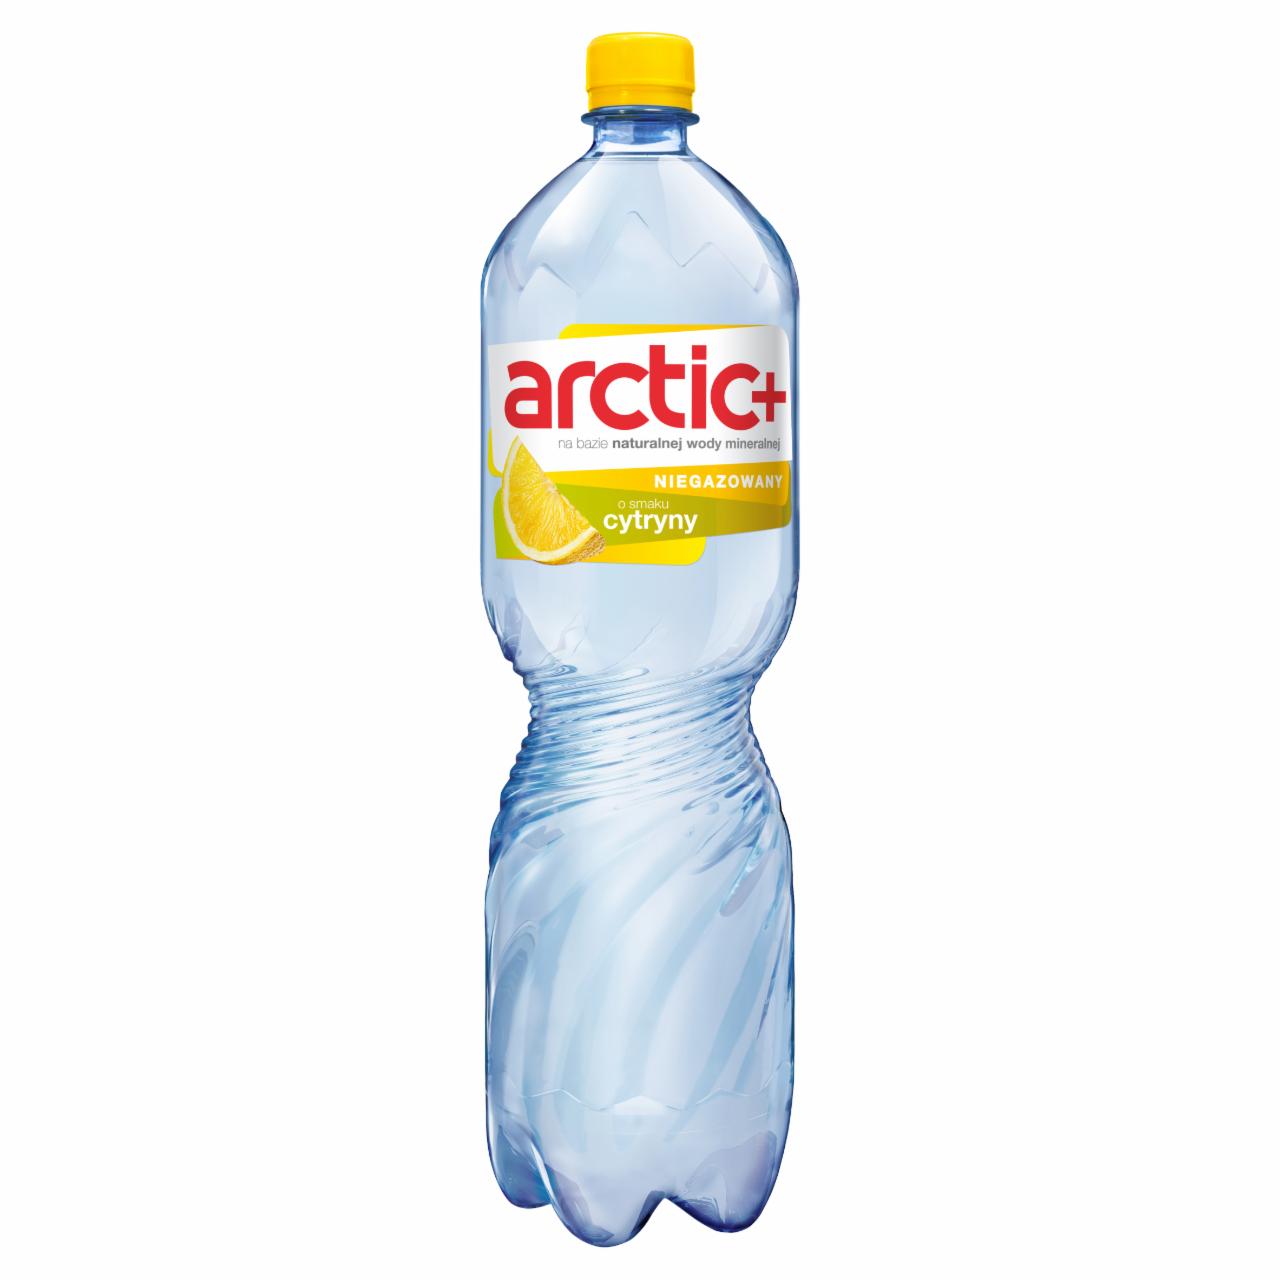 Zdjęcia - Arctic Plus Napój niegazowany o smaku cytryny 1,5 l